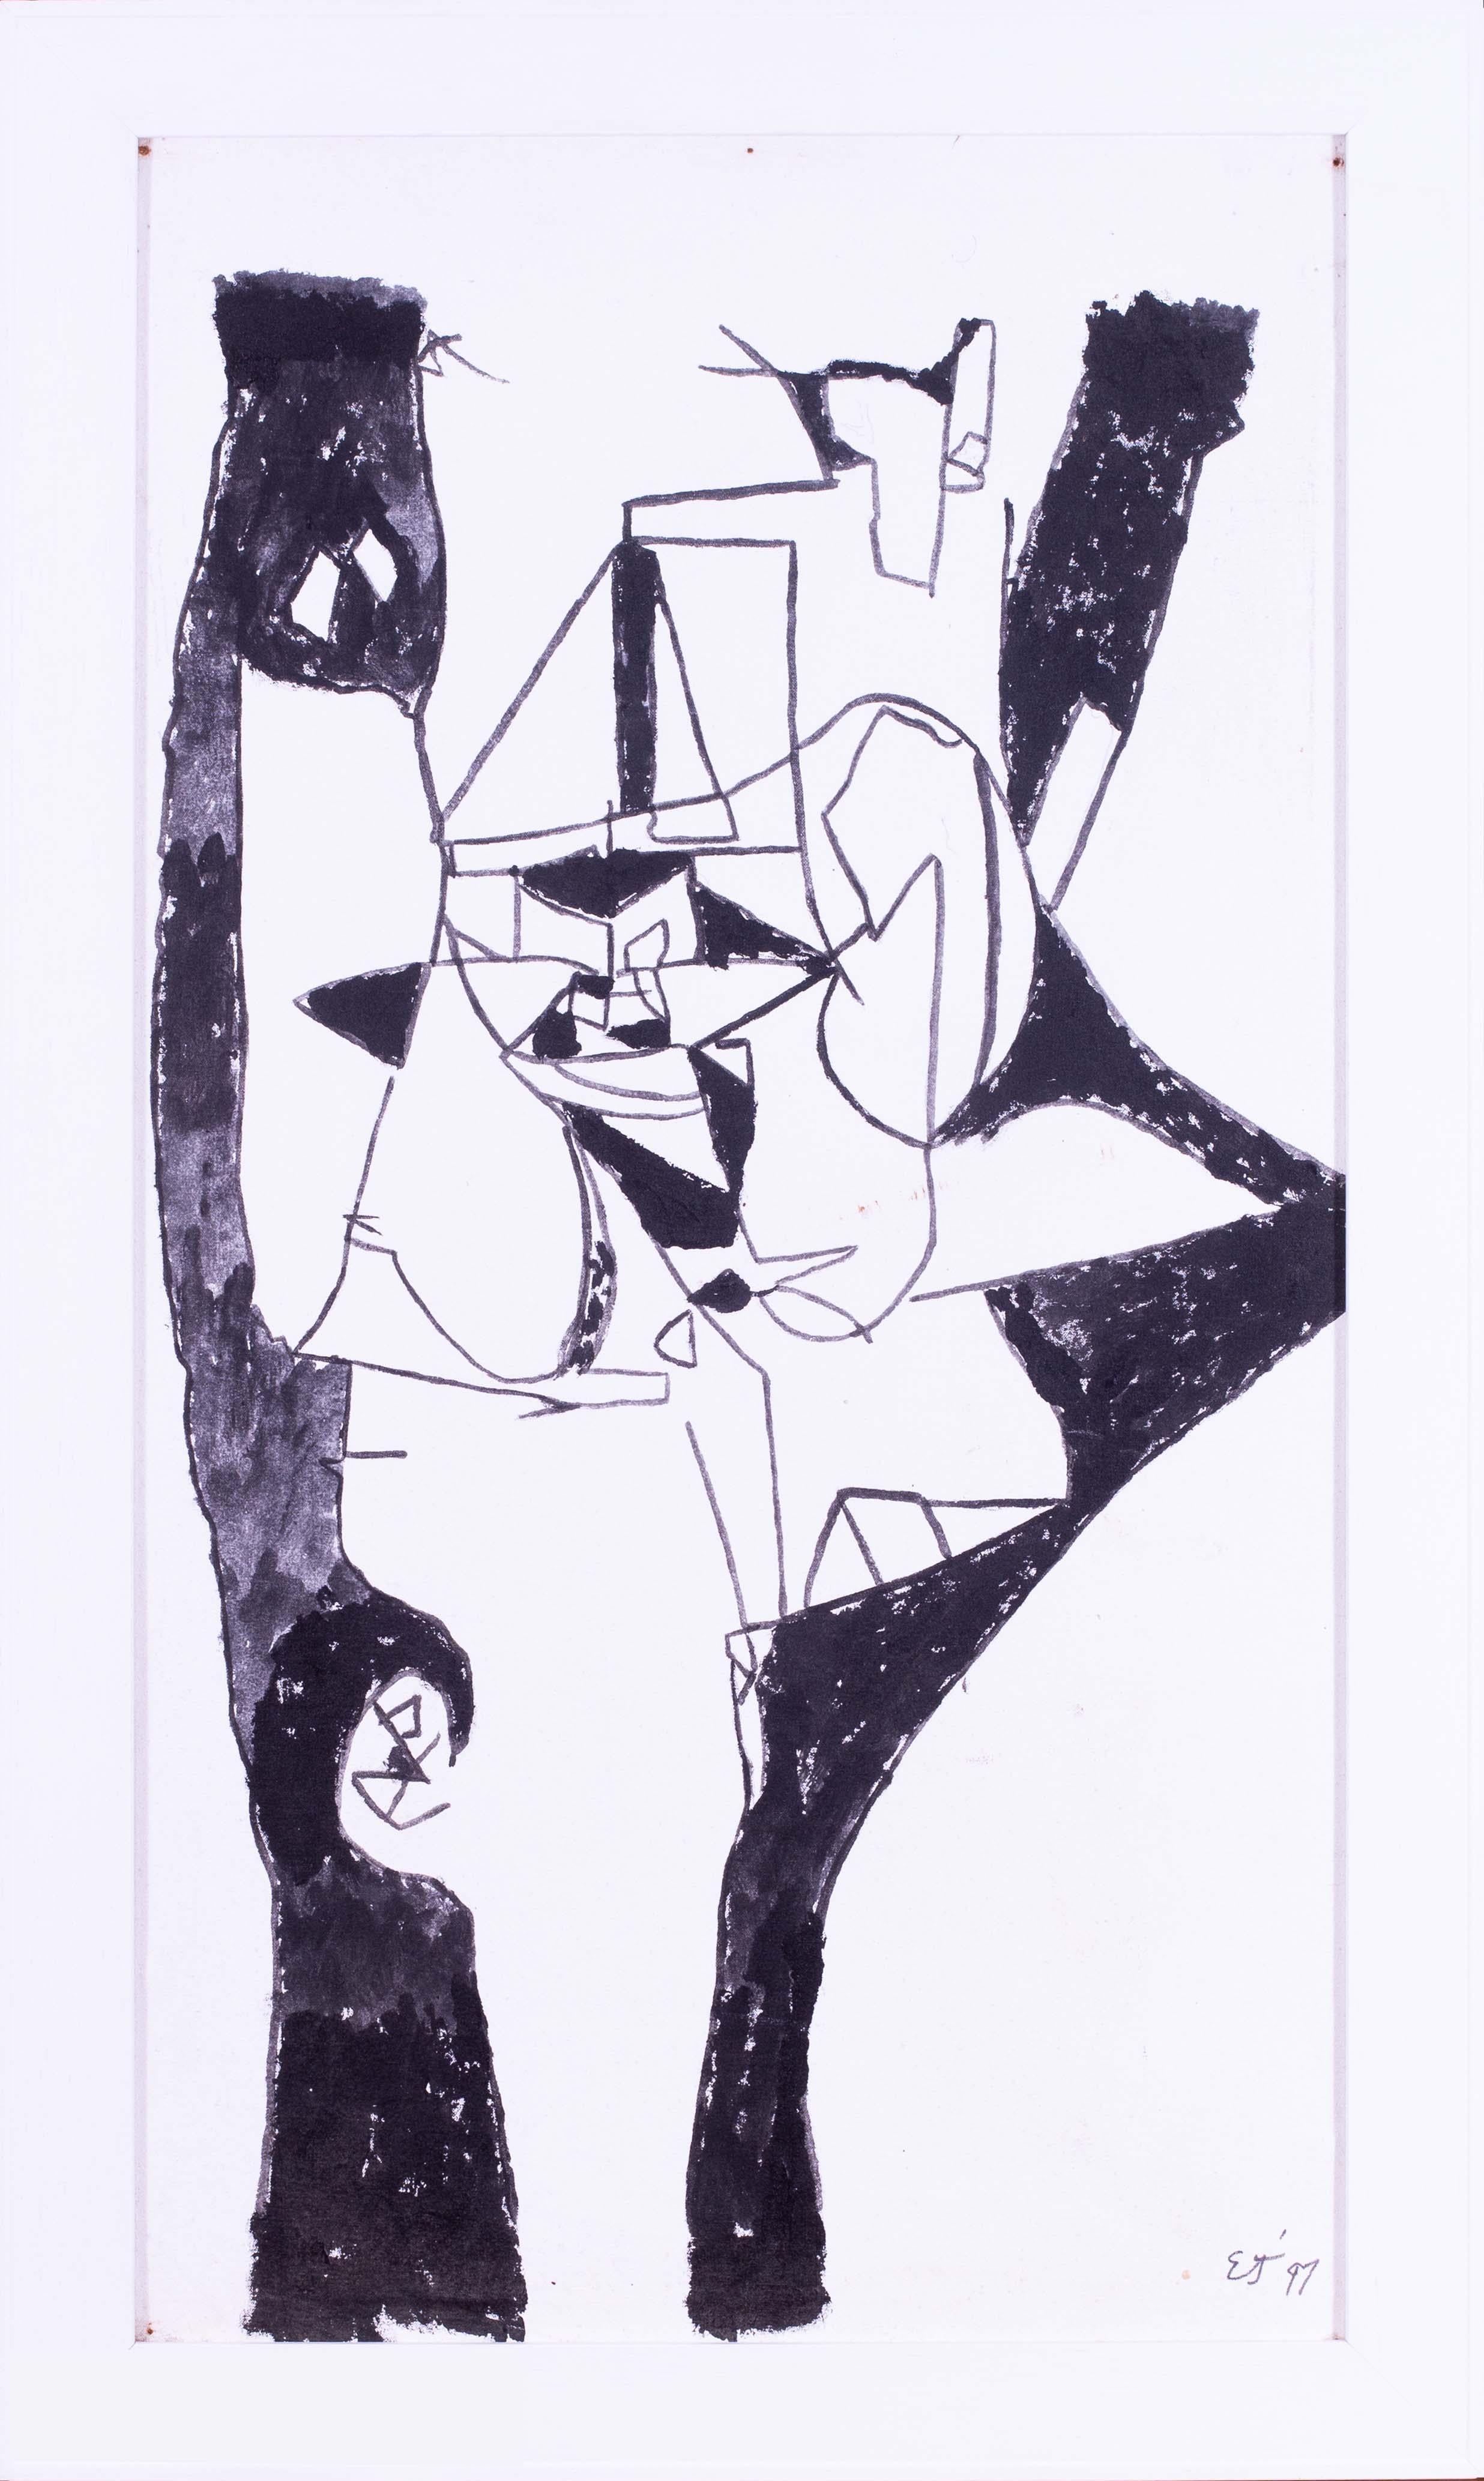 Ein wirklich beeindruckendes abstraktes Schwarz-Weiß-Acrylgemälde des sehr geschickten modernen britischen Künstlers Ewart Johns.

Ewart Johns (Brite, 1923 - 2013)
Schwarz auf Weiß II
Acryl auf Leinwand
Signiert mit Initialen und datiert 'EJ 97'